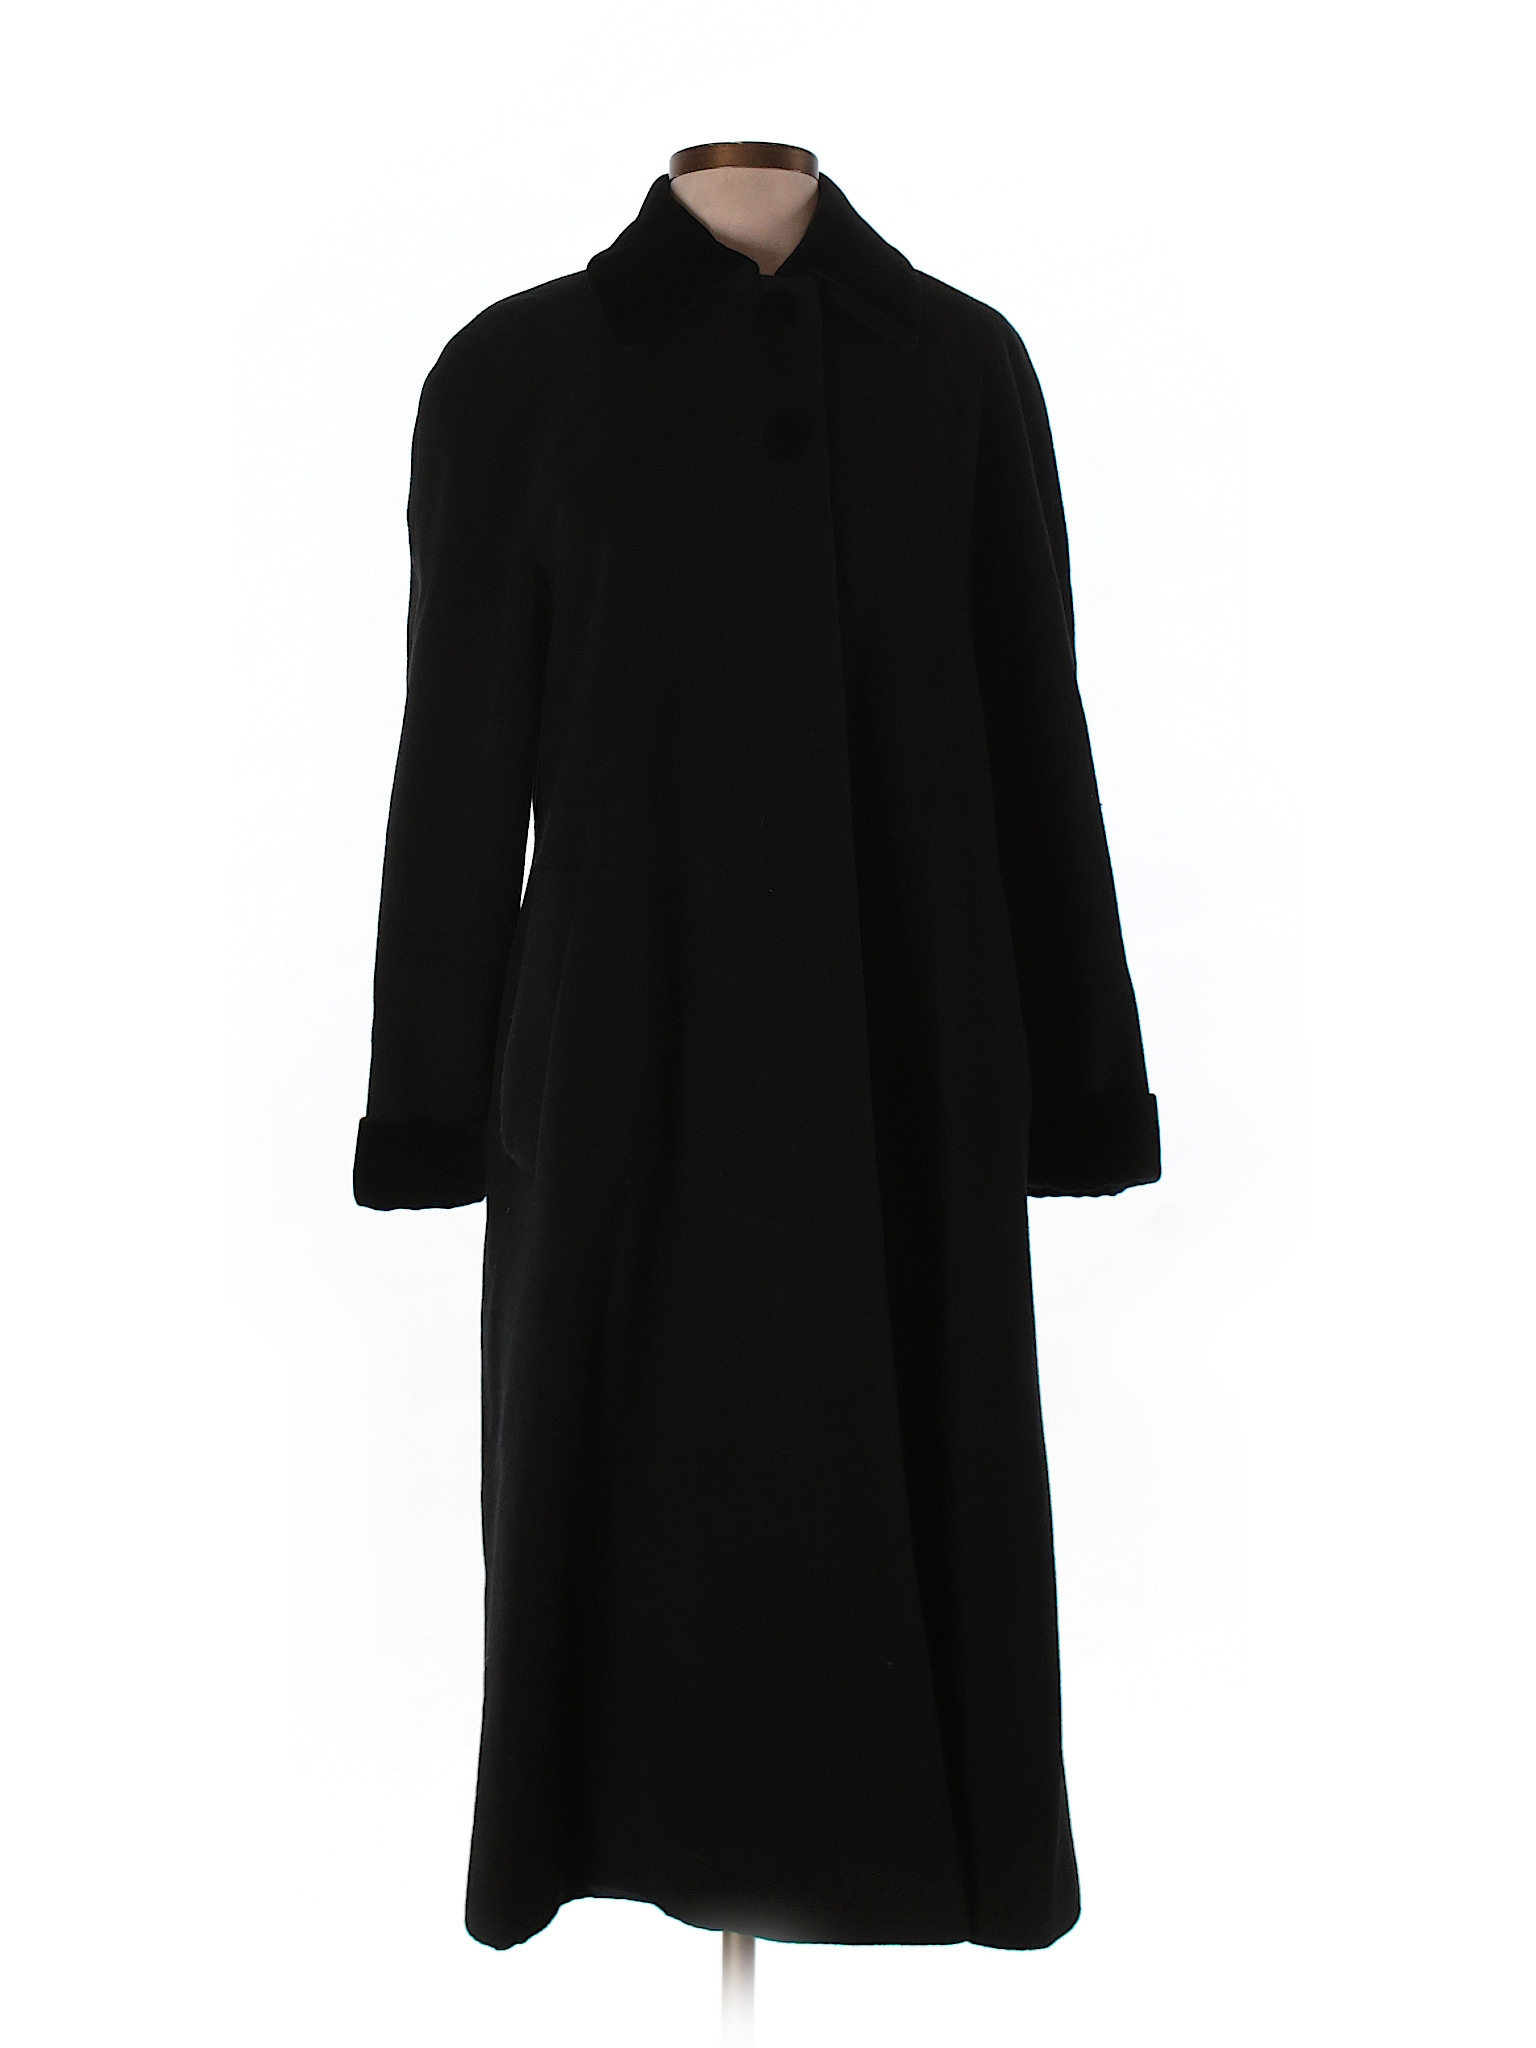 John Weitz Solid Black Wool Coat Size 4 (Petite) - 62% off | thredUP